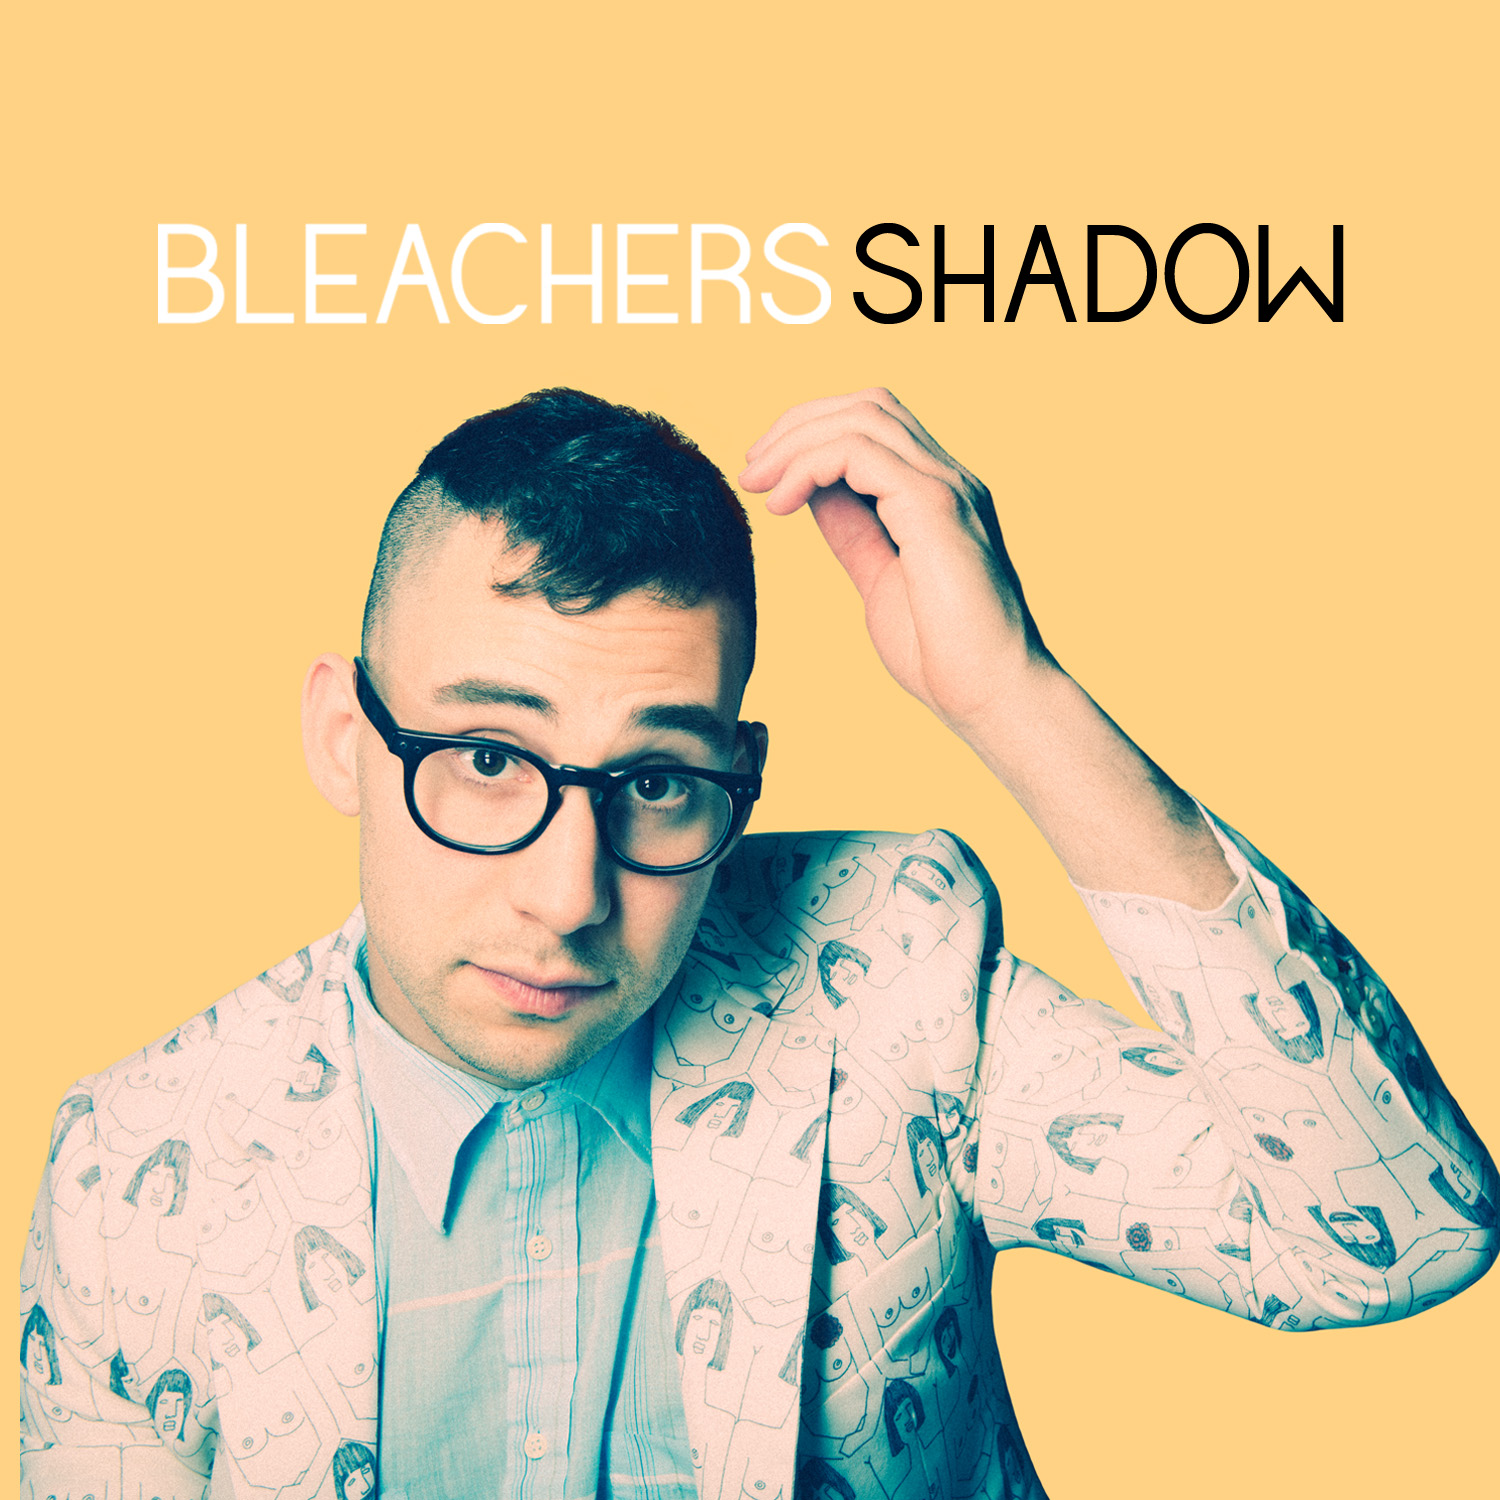 Bleacher_Shadow_Cover